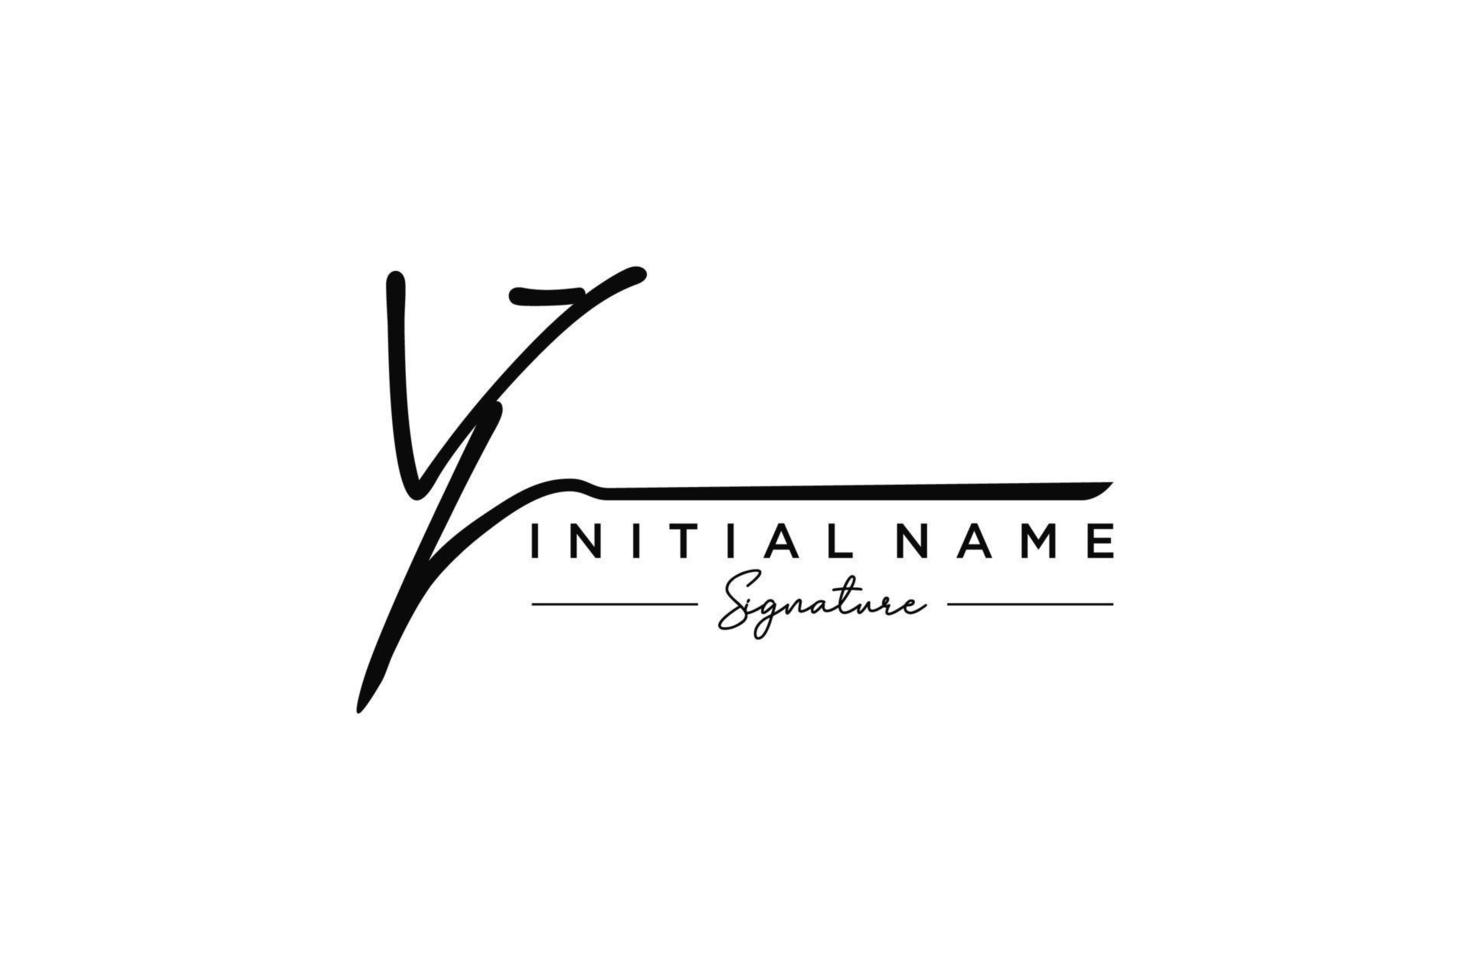 vetor inicial de modelo de logotipo de assinatura vj. ilustração vetorial de letras de caligrafia desenhada à mão.